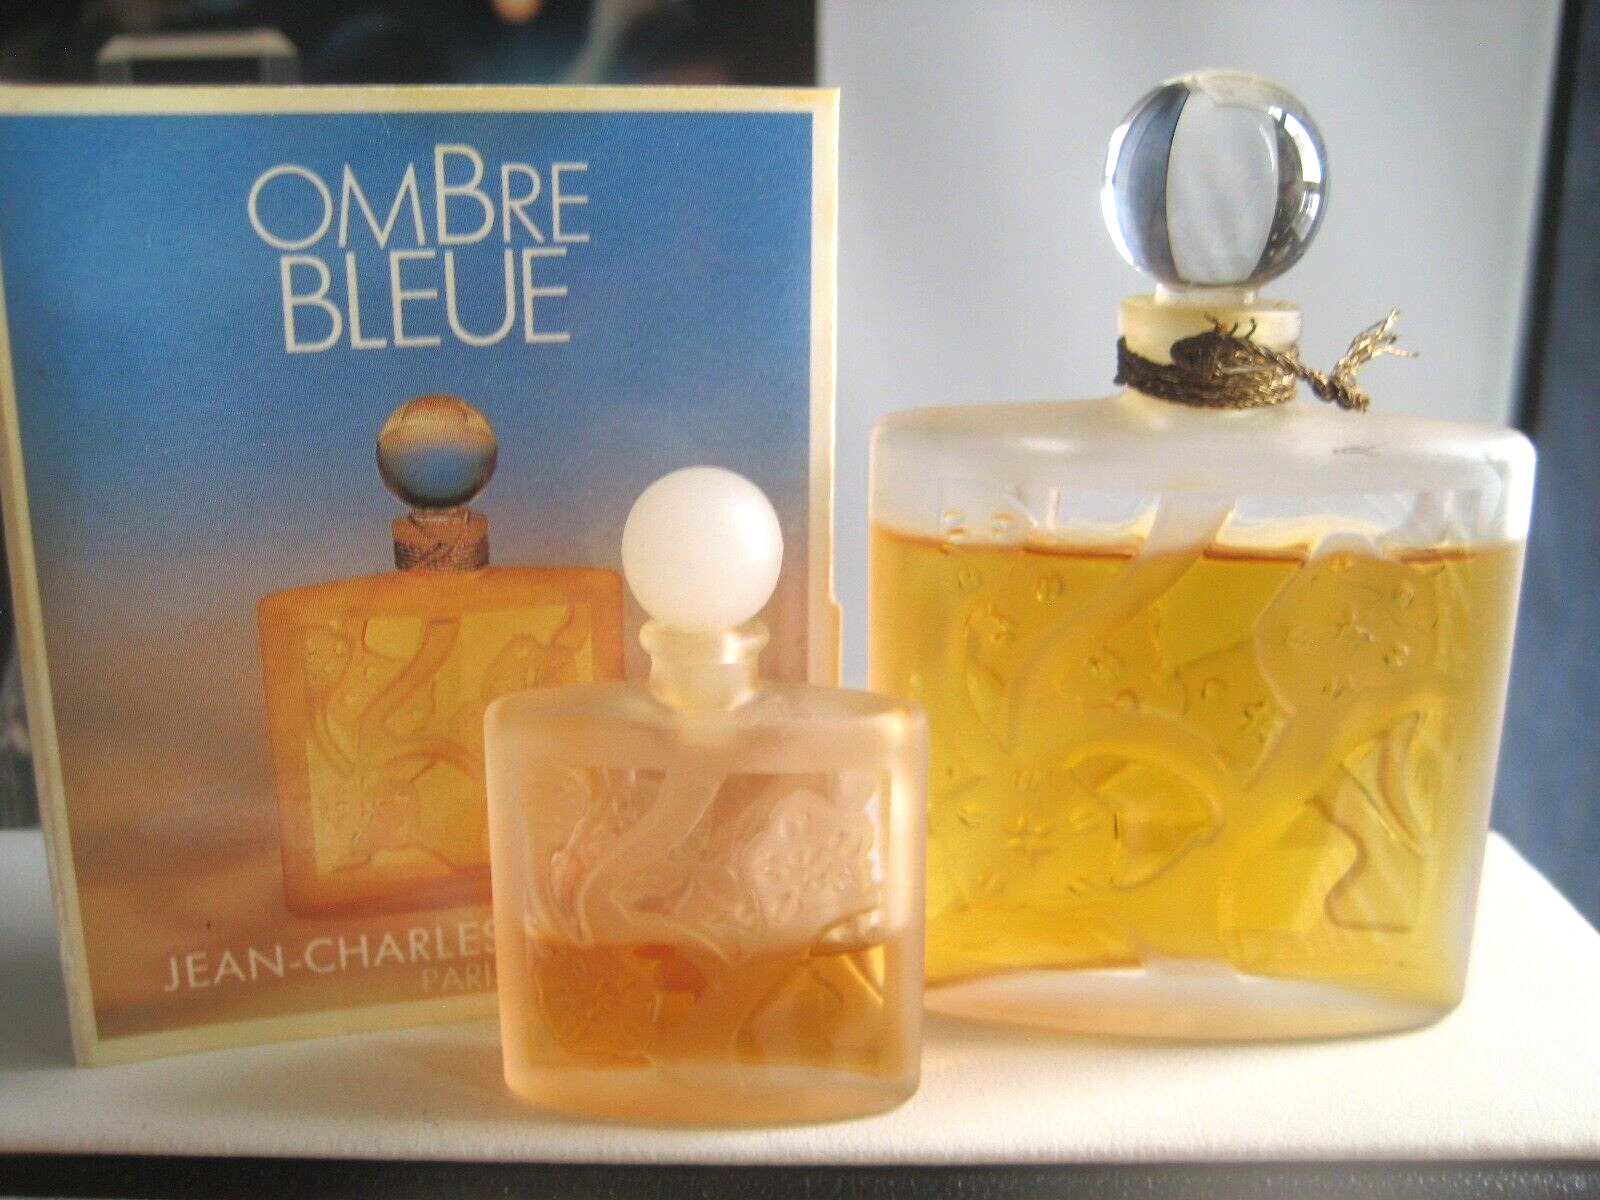 🎁3pc lot 1/2 oz Vintage PARFUM pure perfume Jean-Charles Brosseau Ombre Bleue